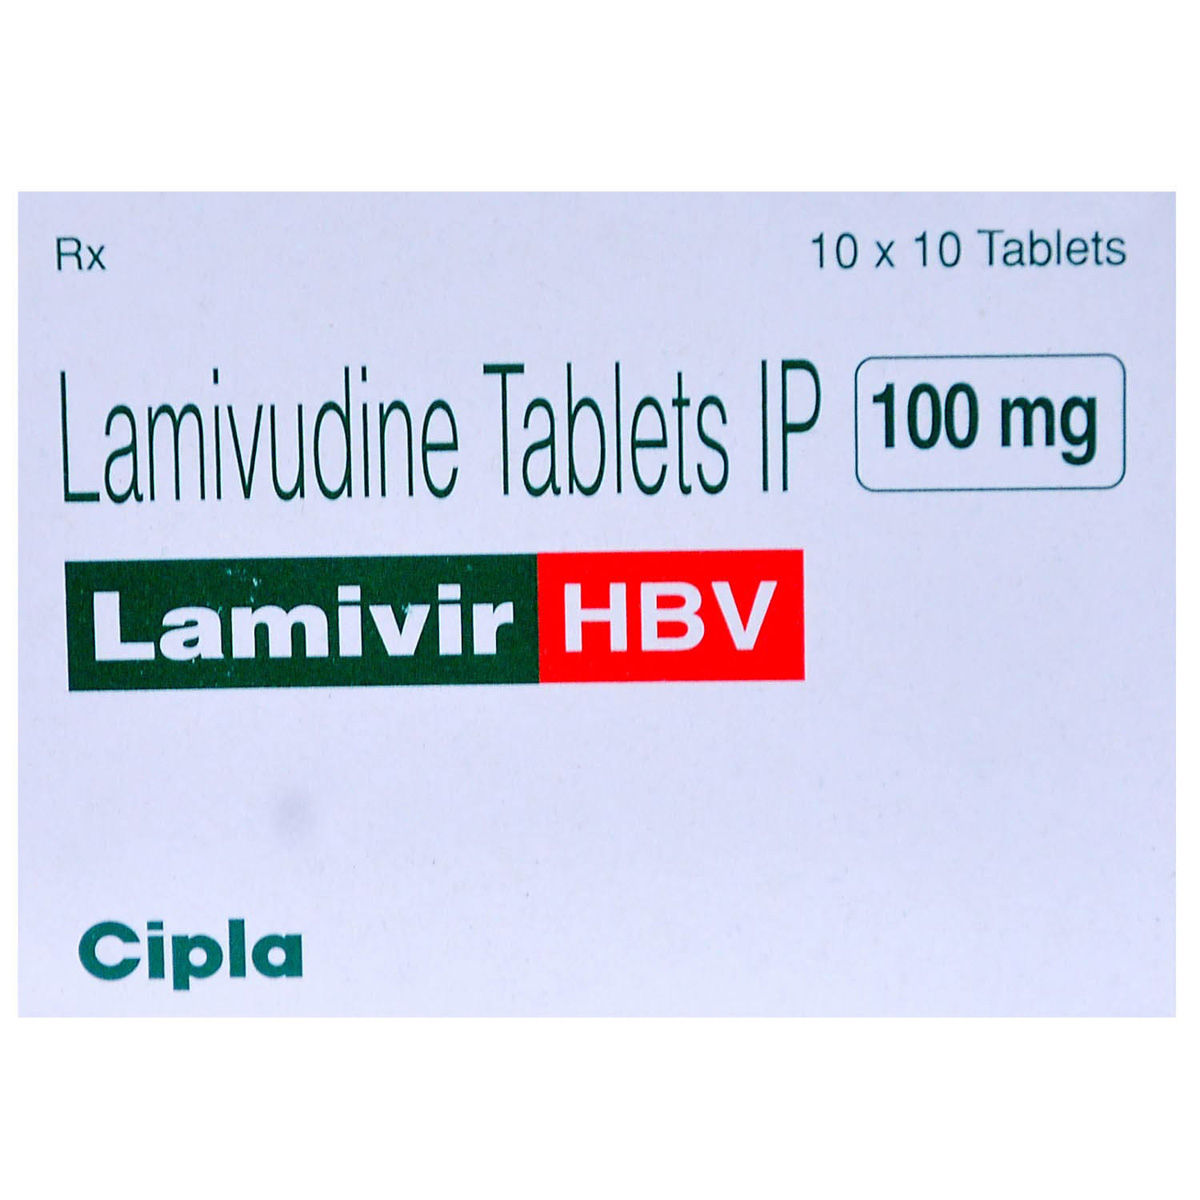 Buy Lamivir HBV Tablet 10's Online